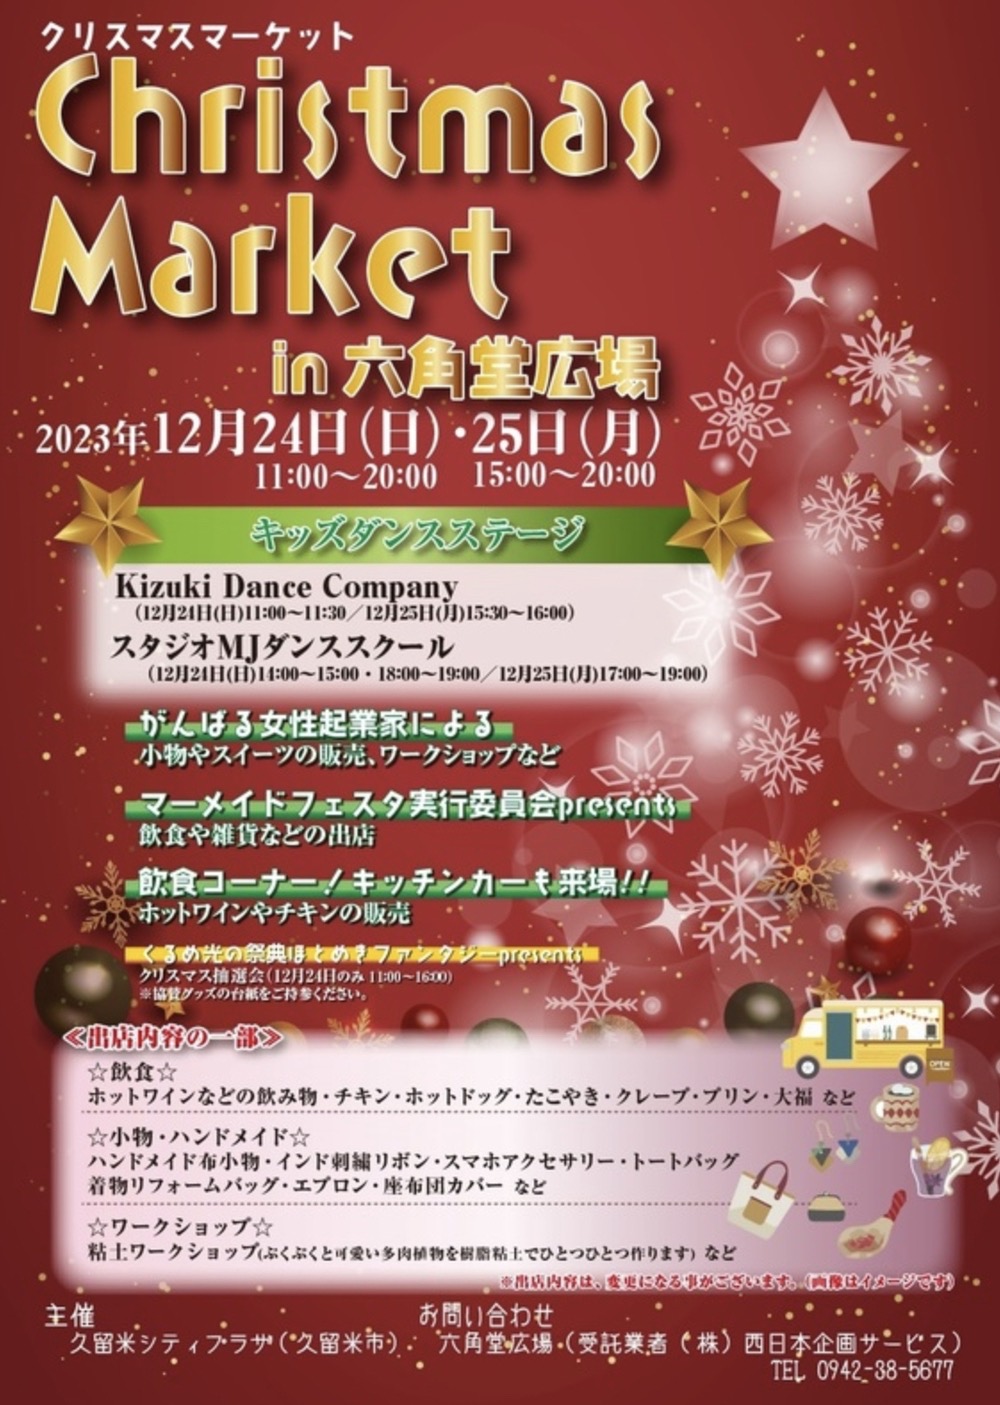 クリスマスマーケットin六角堂広場 ダンスや飲食コーナー、キッチンカーなど開催